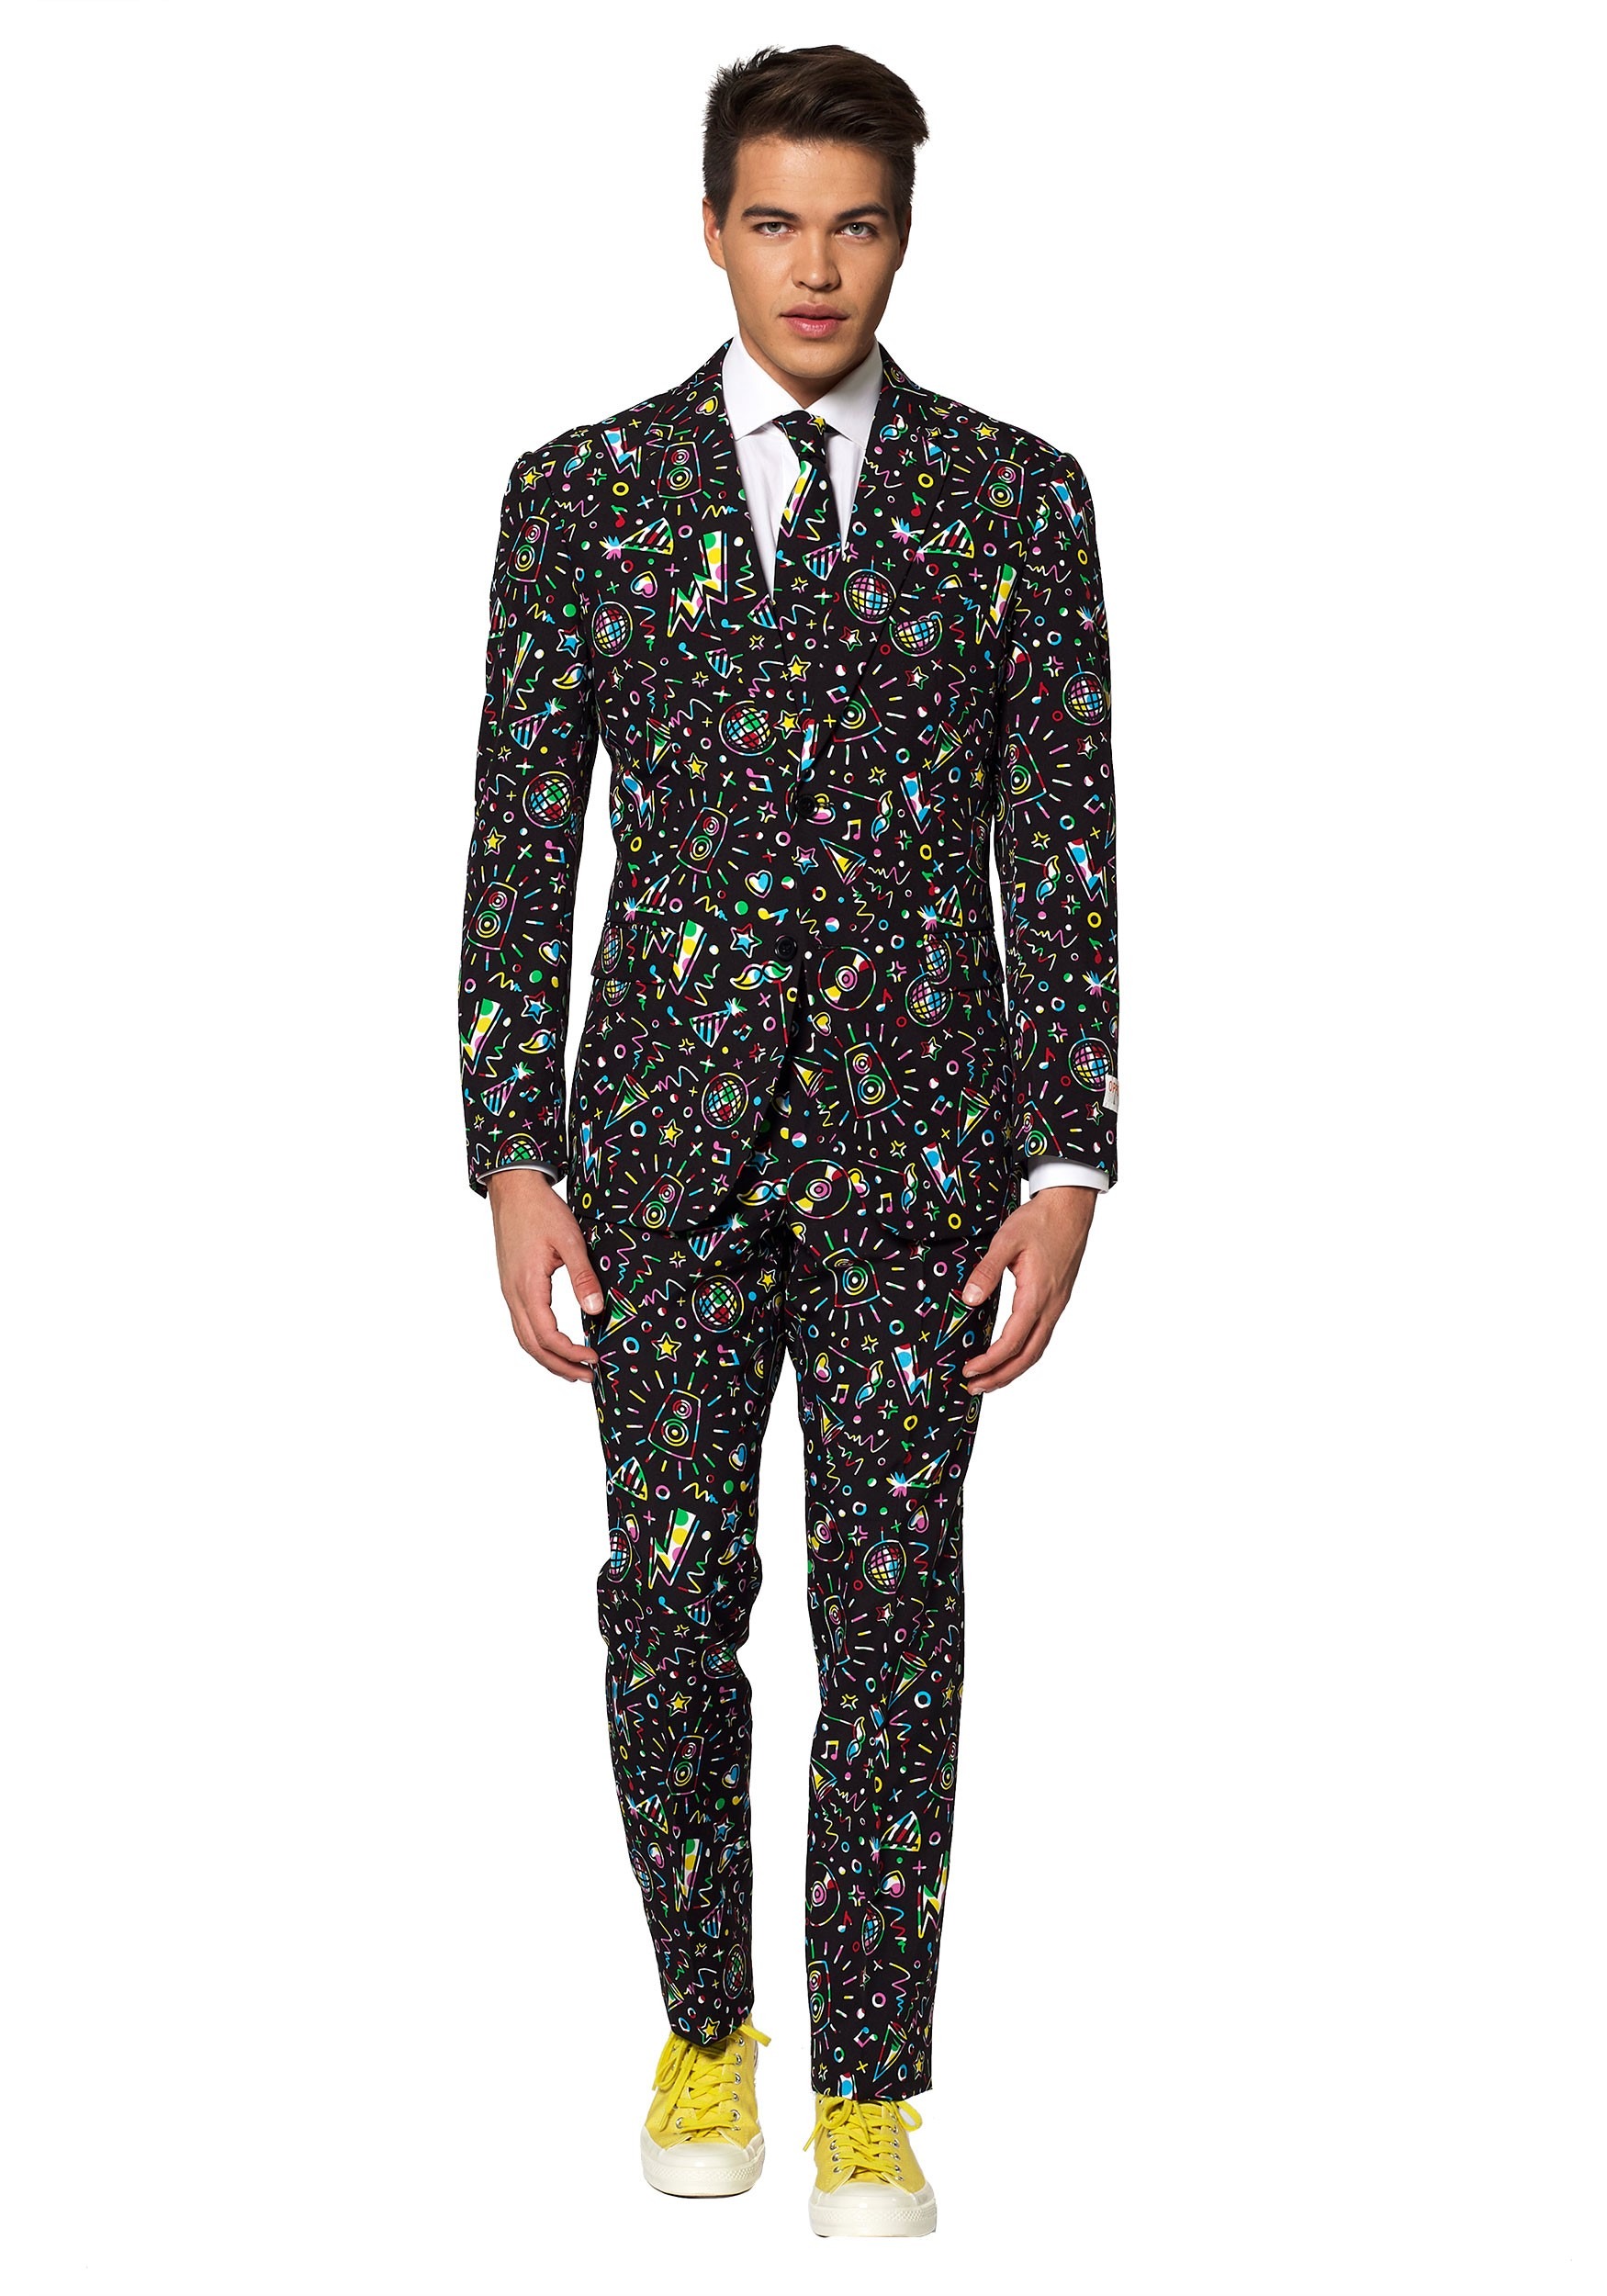 Opposuit Men's Disco Dude Suit